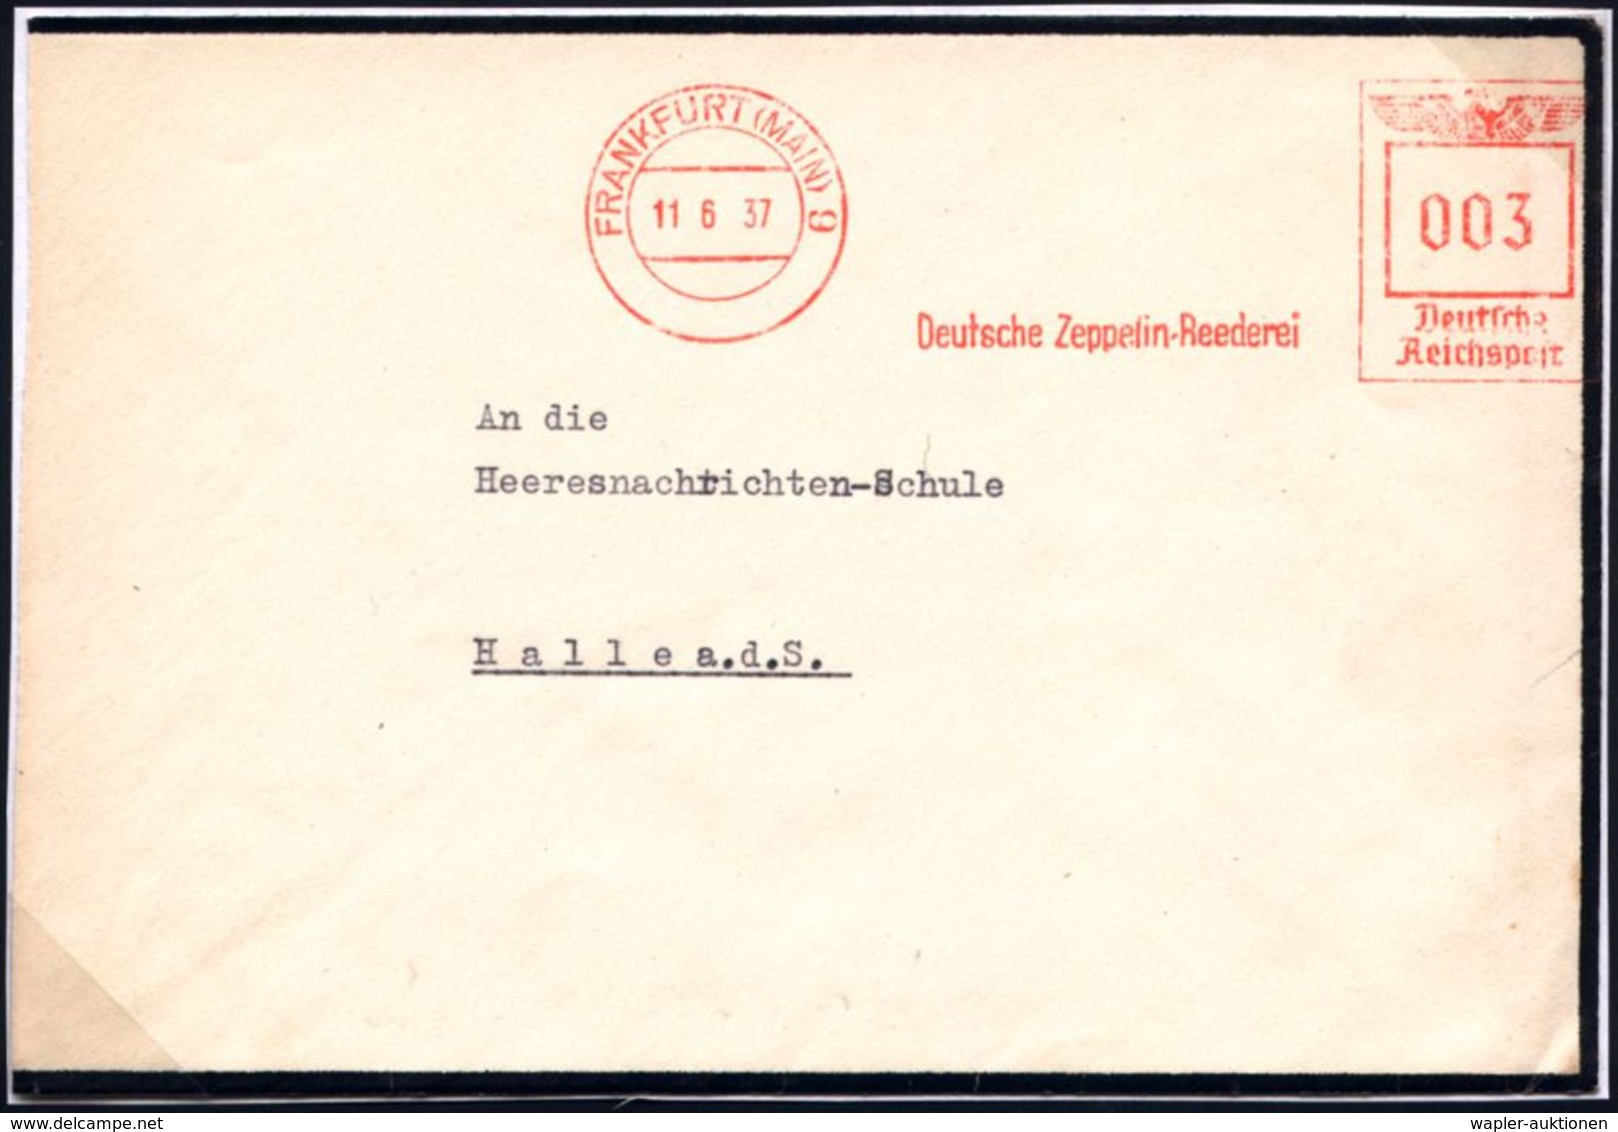 ZEPPELIN-MEMORABILA / ERINNERUNGSBELEGE : FRANKFURT (MAIN)9/ Deutsche Zeppelin-Reederei 1937 (11.6.) AFS 003 Pf. Postamt - Zeppeline